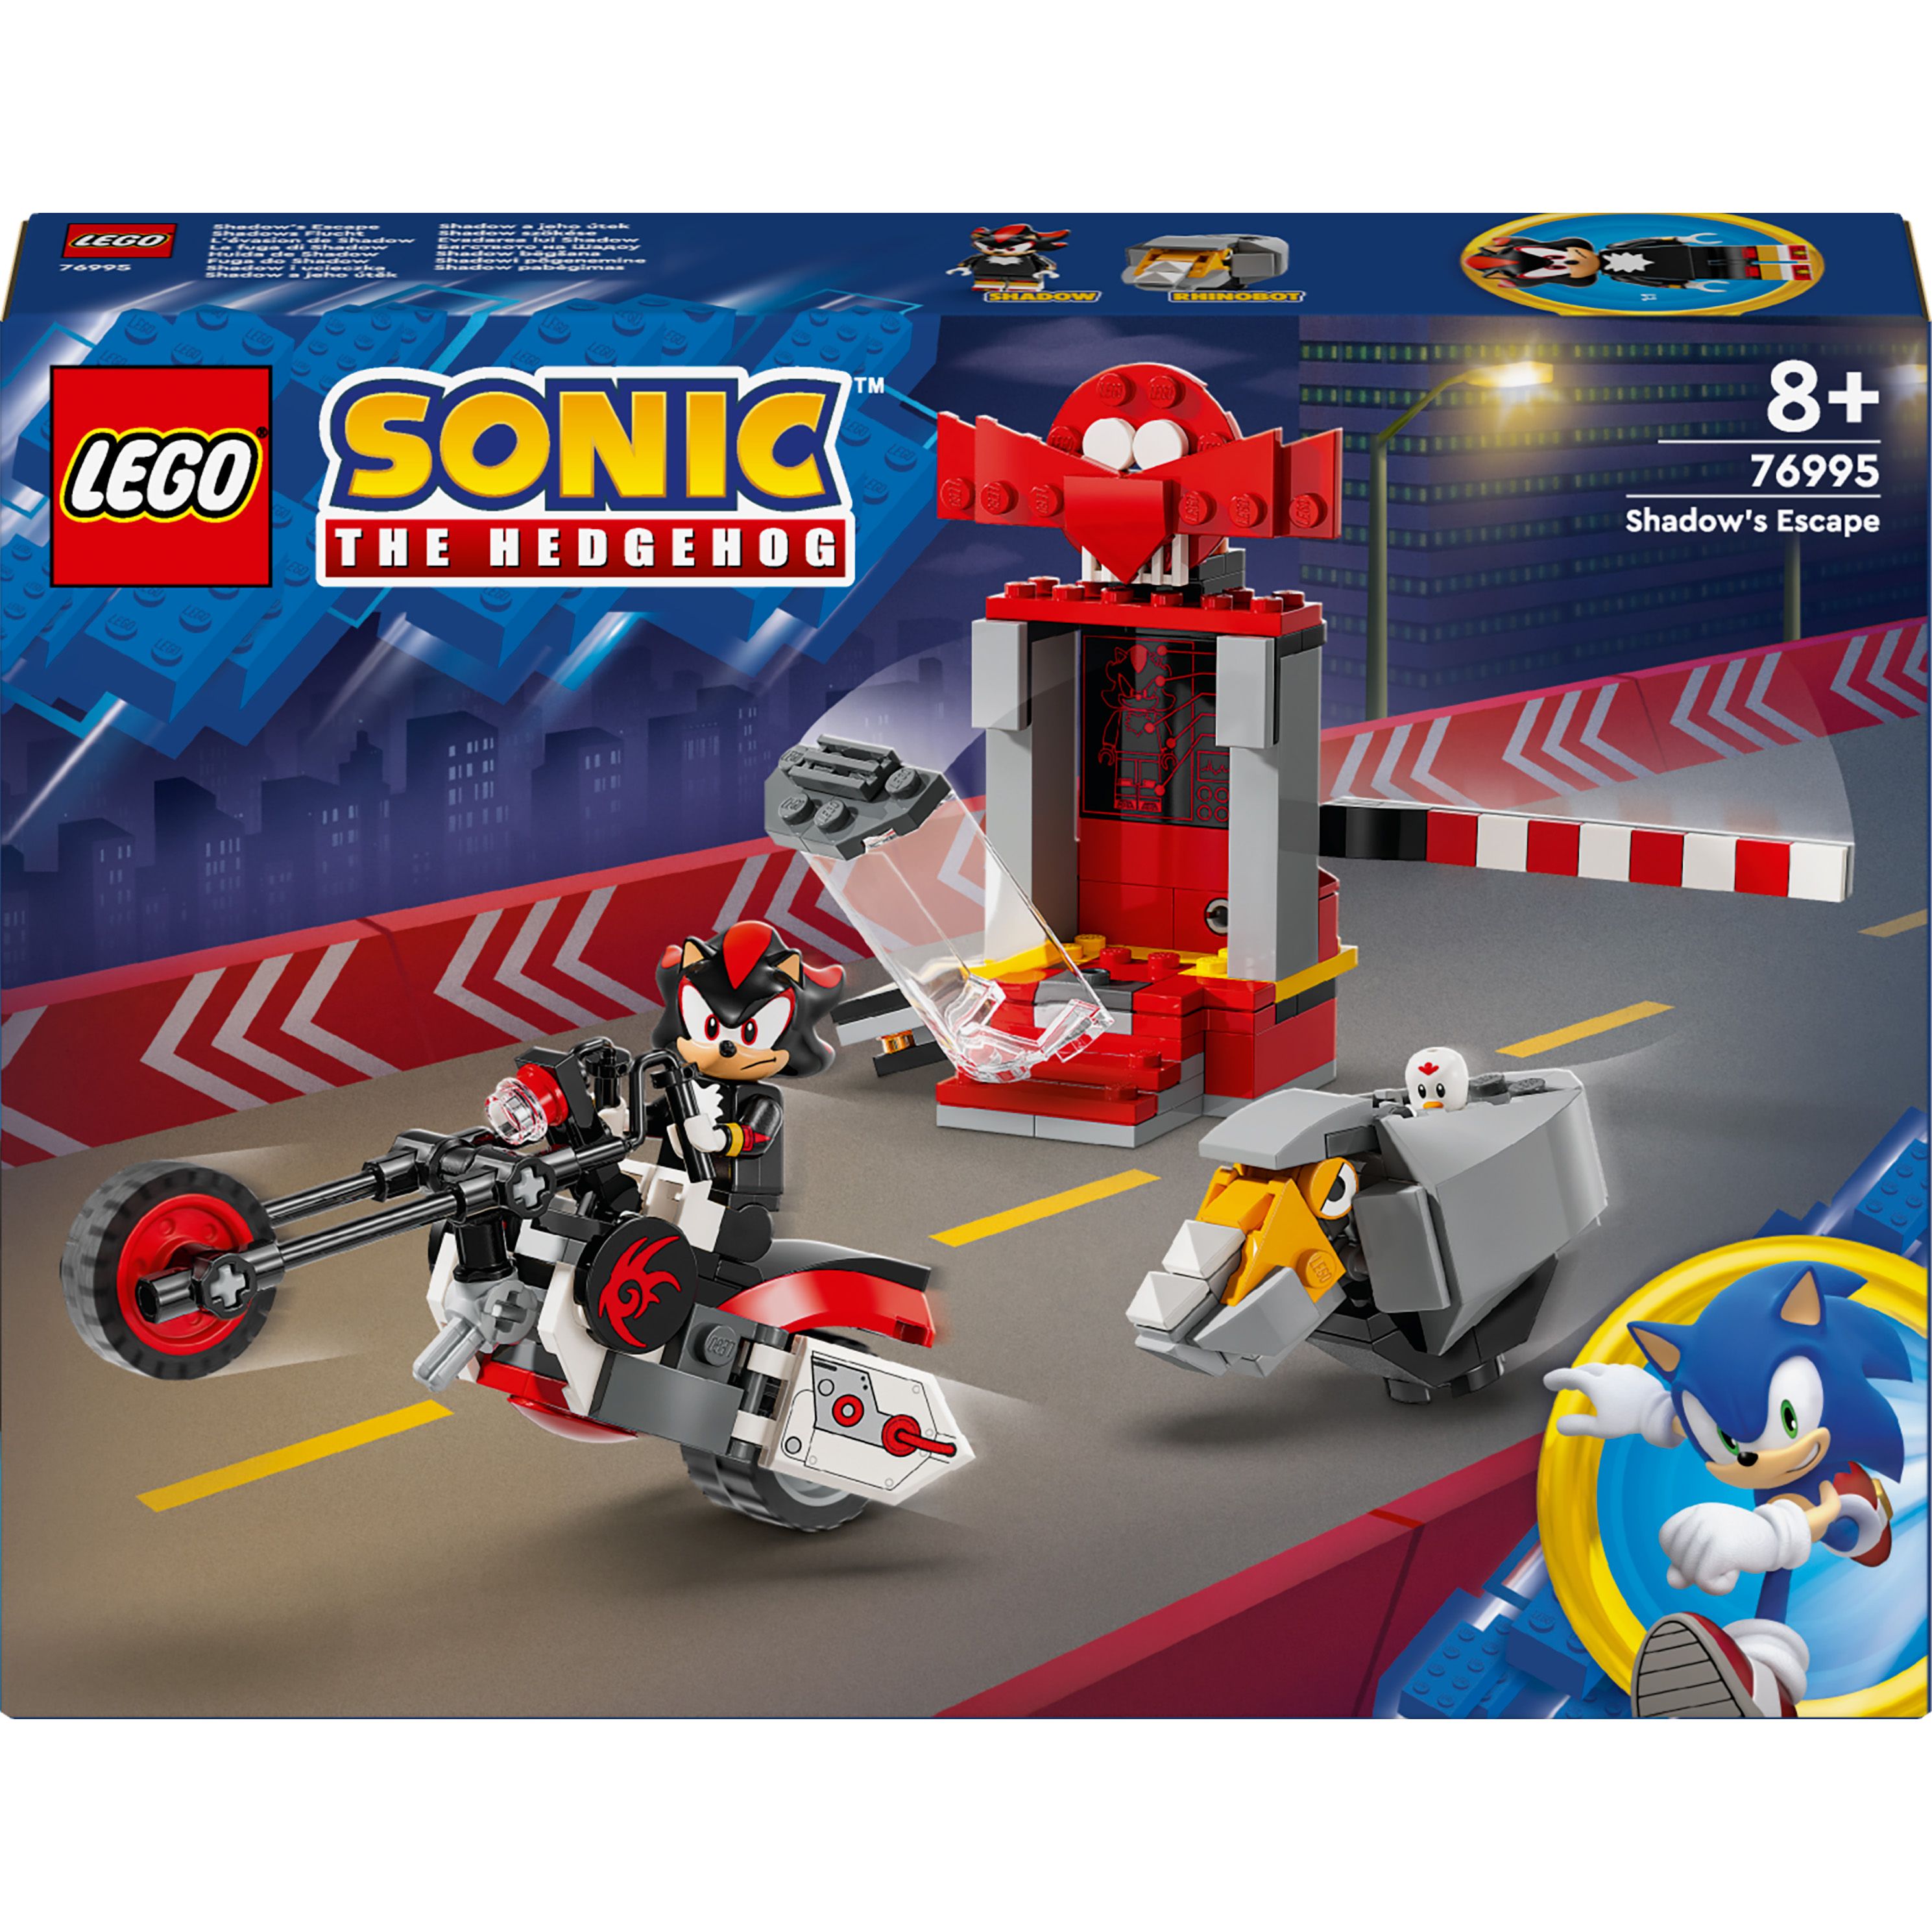 Конструктор LEGO Sonic the Hedgehog Їжак Шедоу втеча 196 деталей (76995) - фото 1